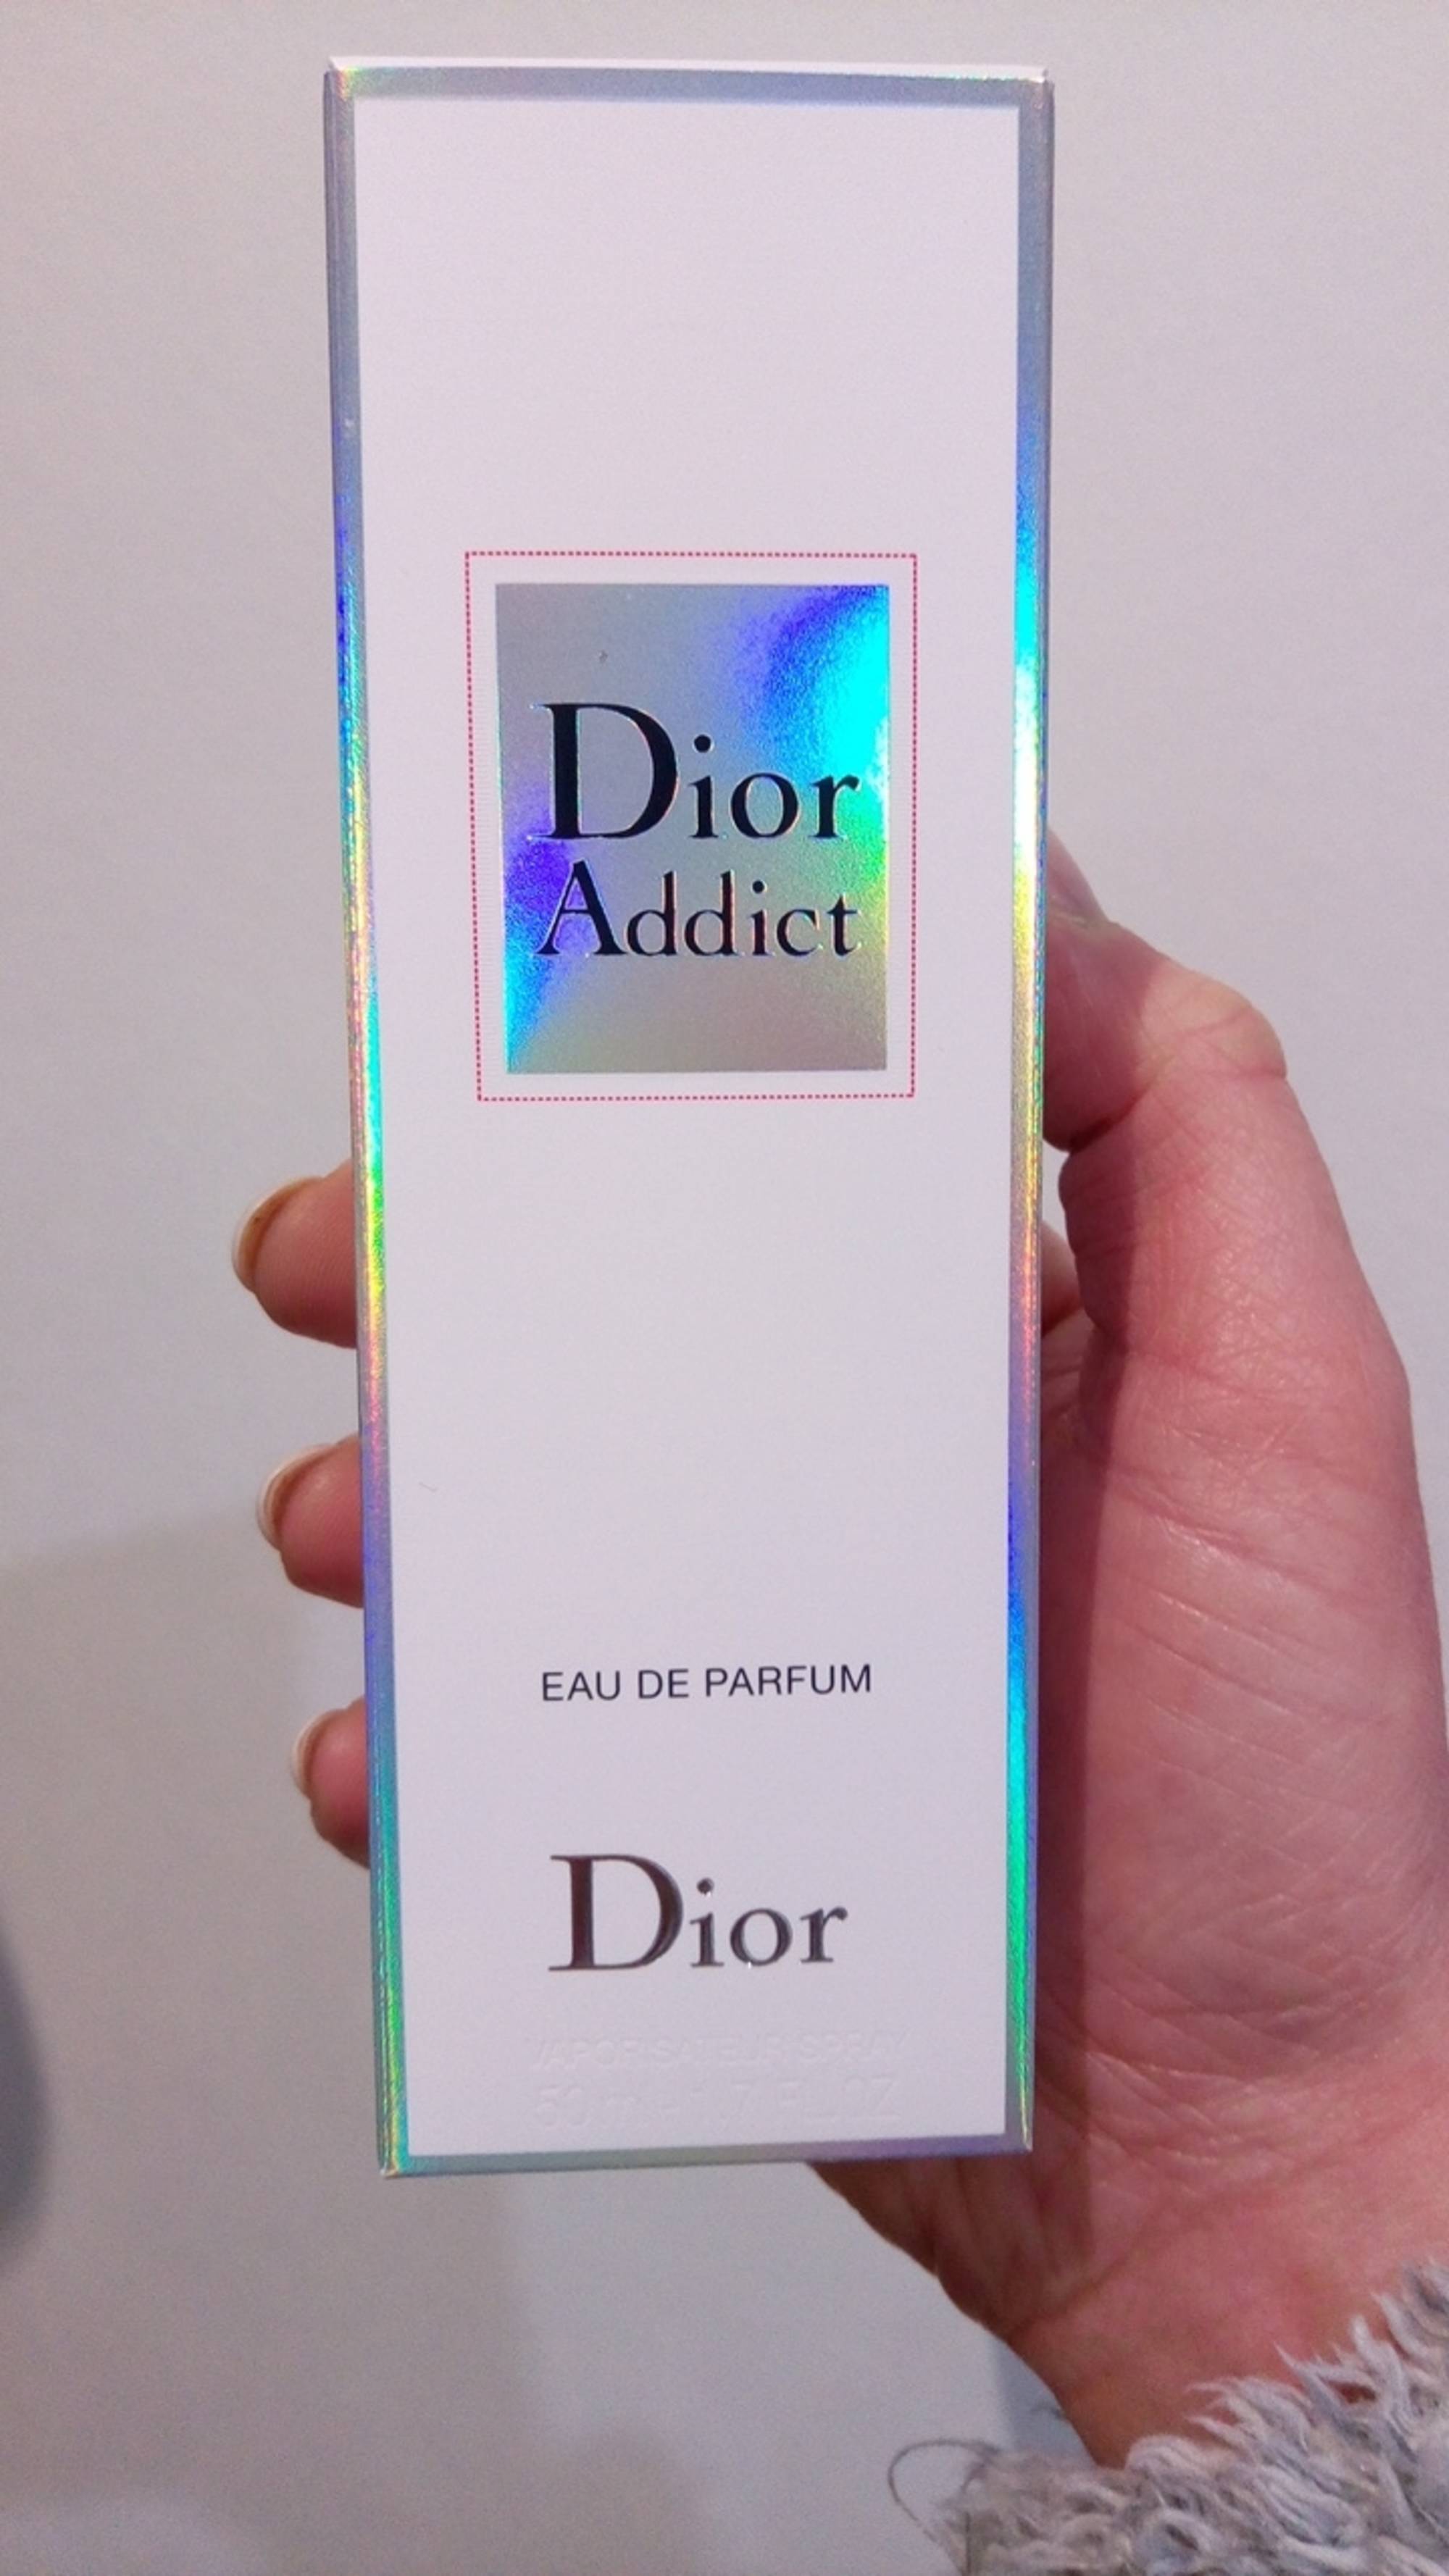 DIOR - Addict - Eau de parfum